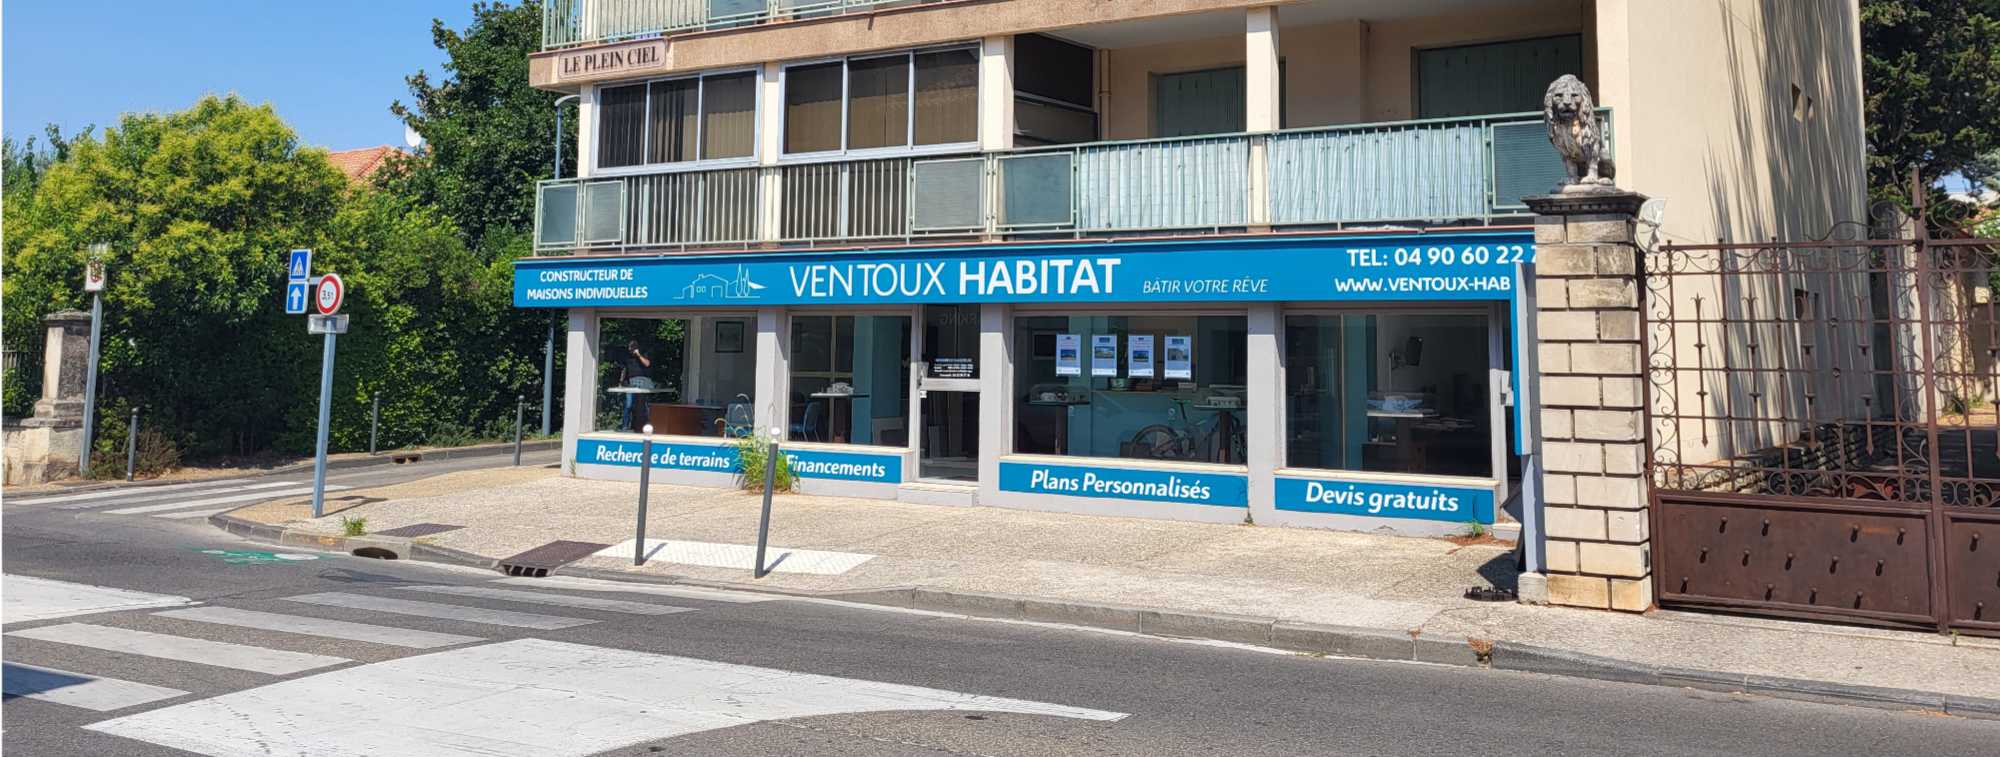 Ventoux Habitat, constructeur de maisons individuelles à Carpentras (Vaucluse)